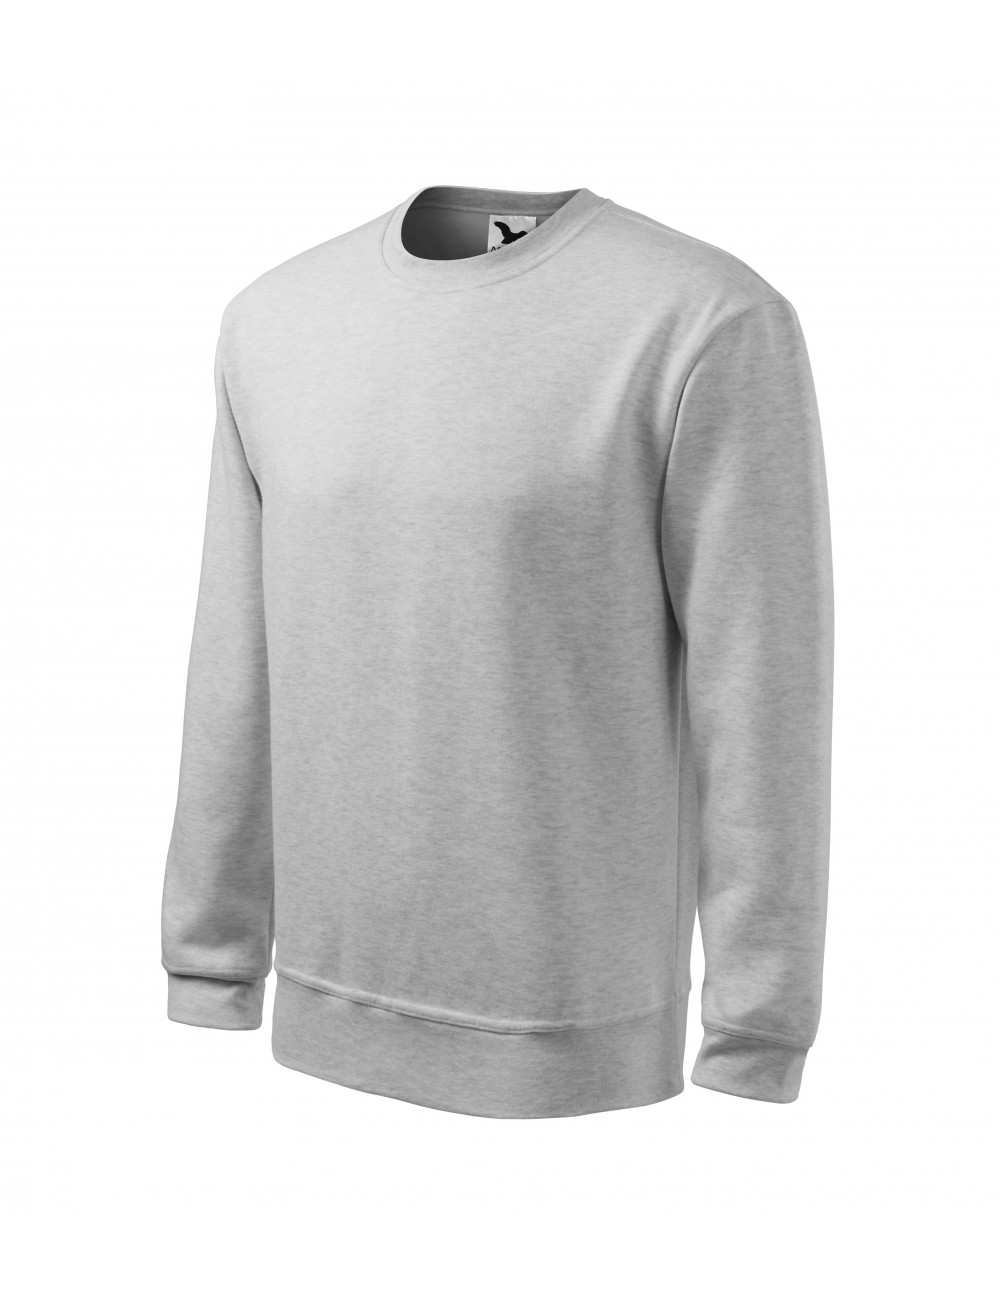 Herren-/Kinder-Sweatshirt Essential 406 Hellgrau Melange Adler Malfini